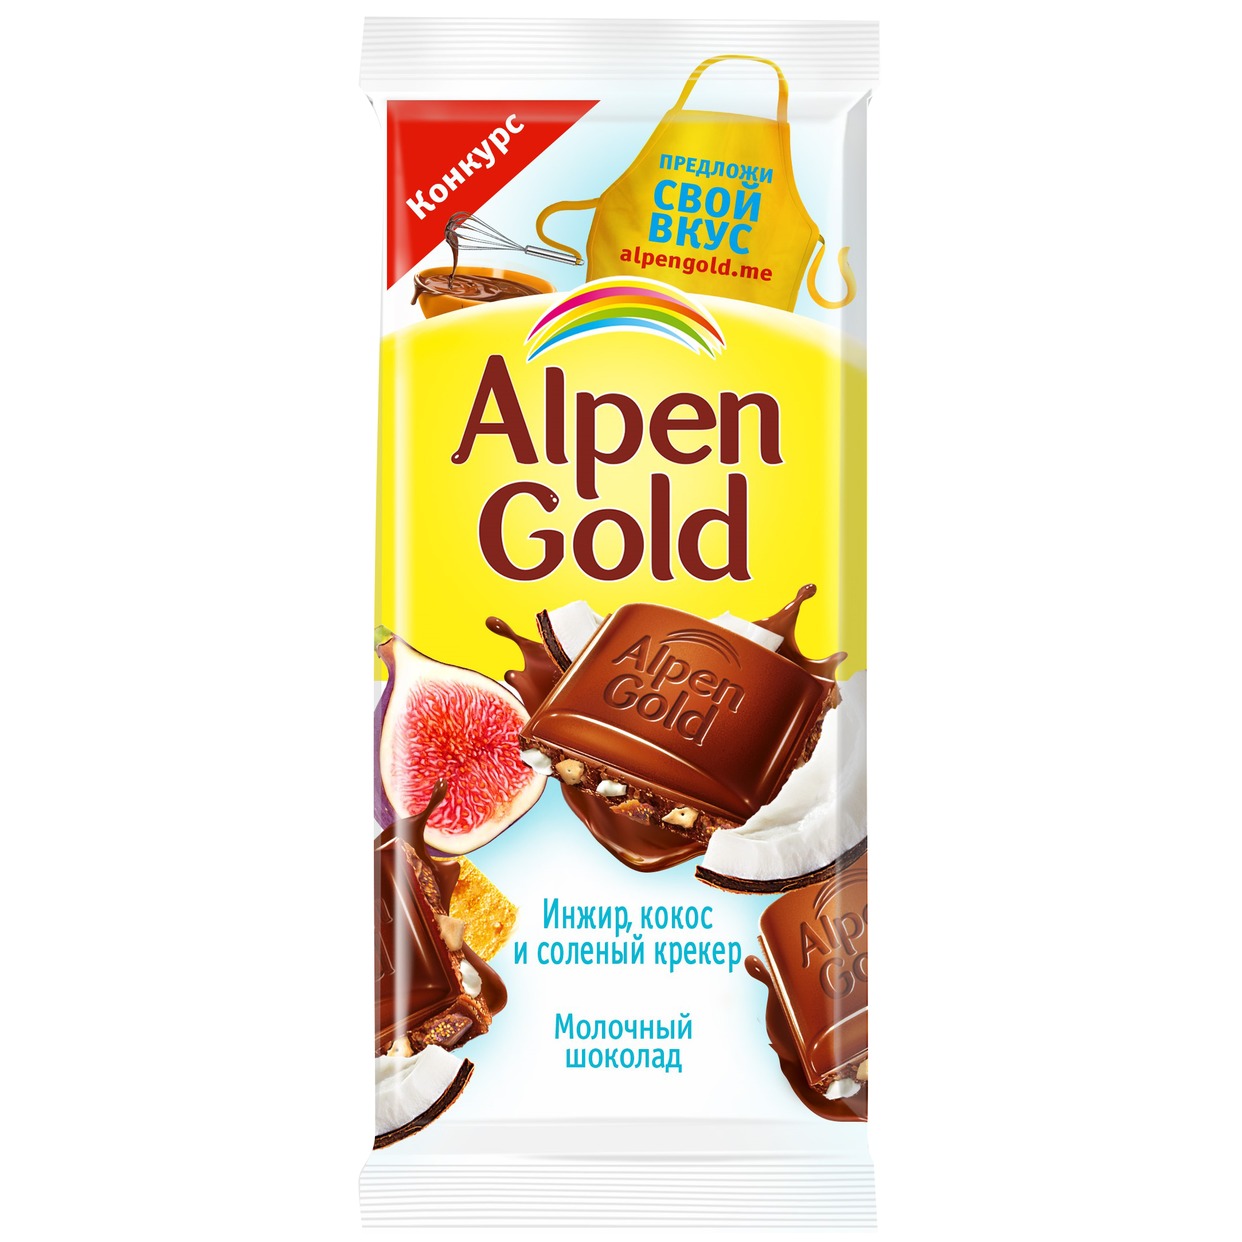 Шоколад молочный "Альпен Гольд" с сушеным инжиром, кокосовой стружкой и соленым крекером, 85г по акции в Пятерочке